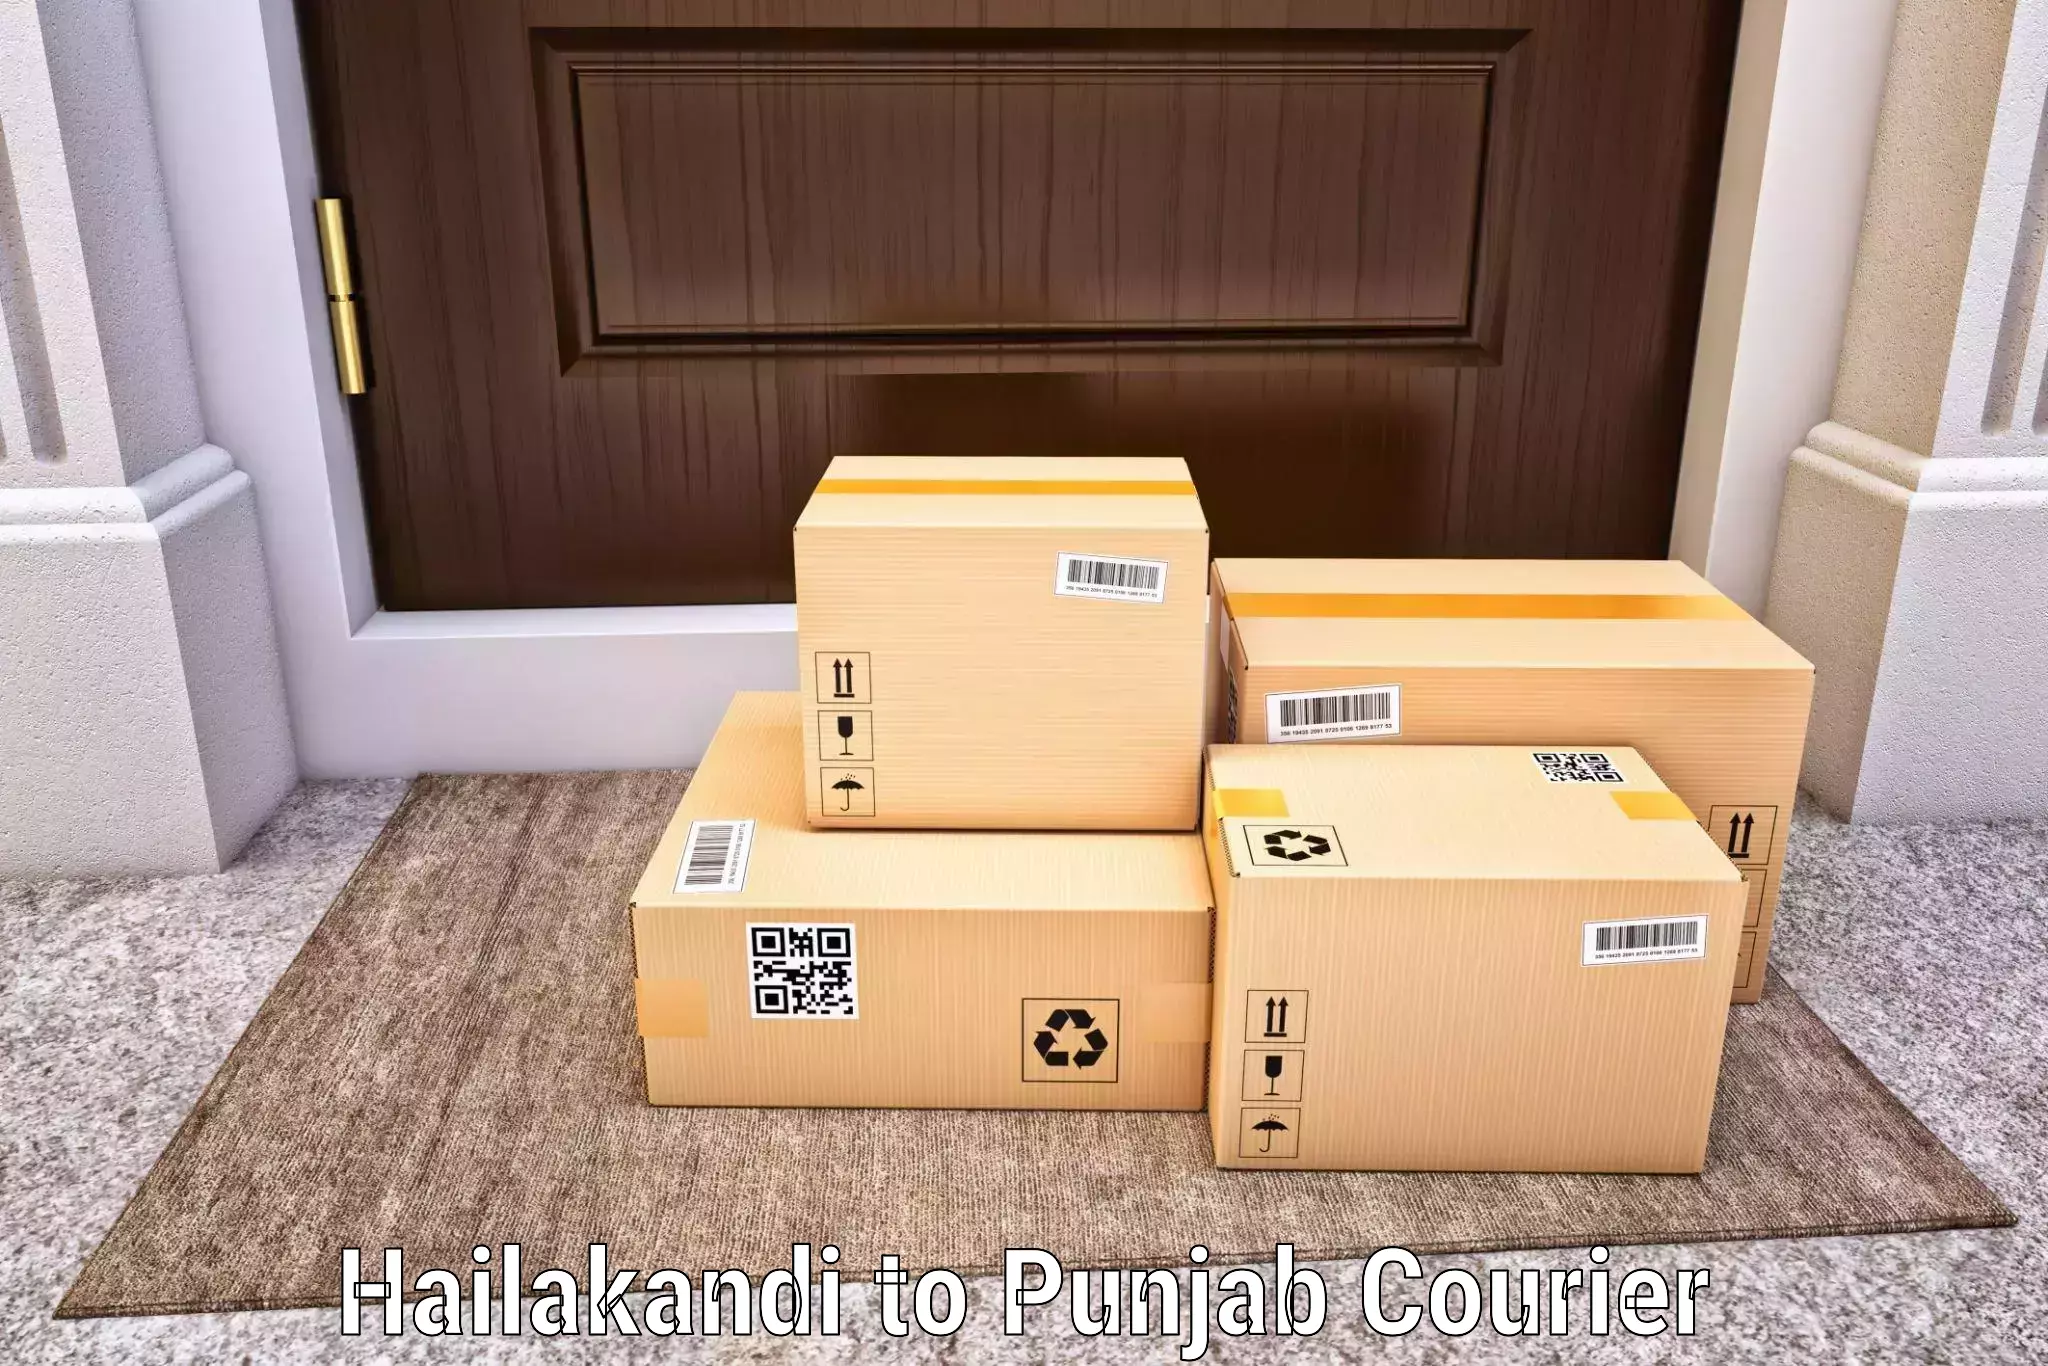 Enhanced shipping experience in Hailakandi to Ajnala